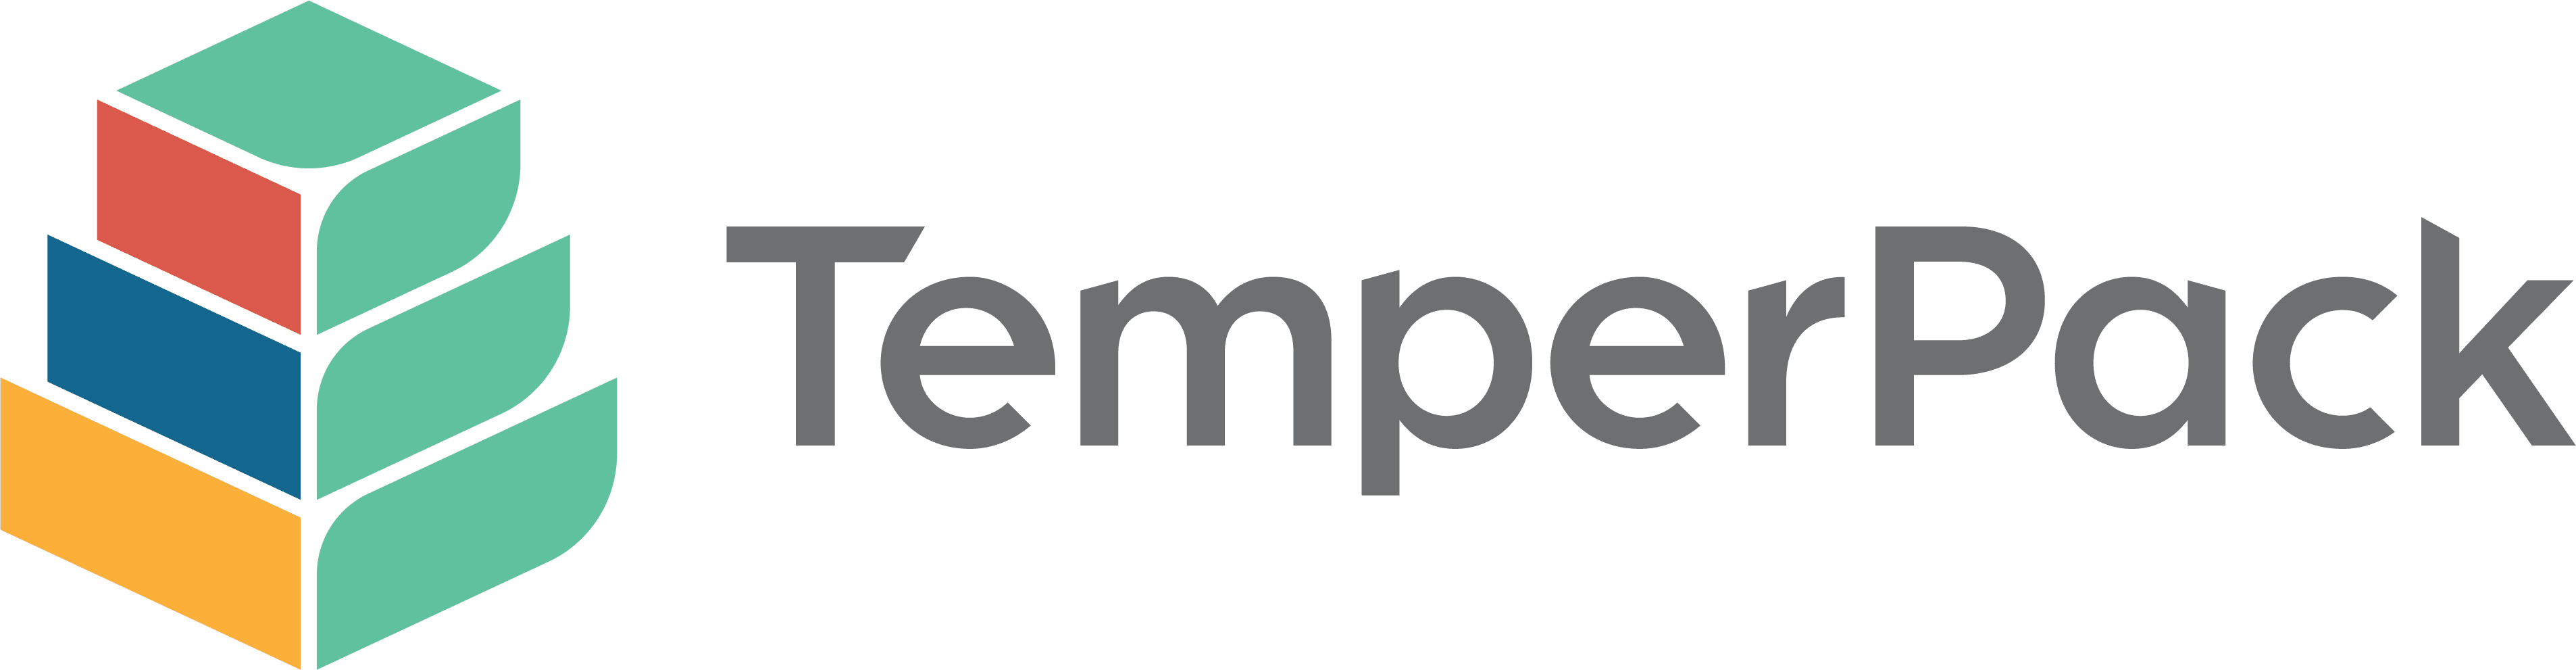 TemperPack